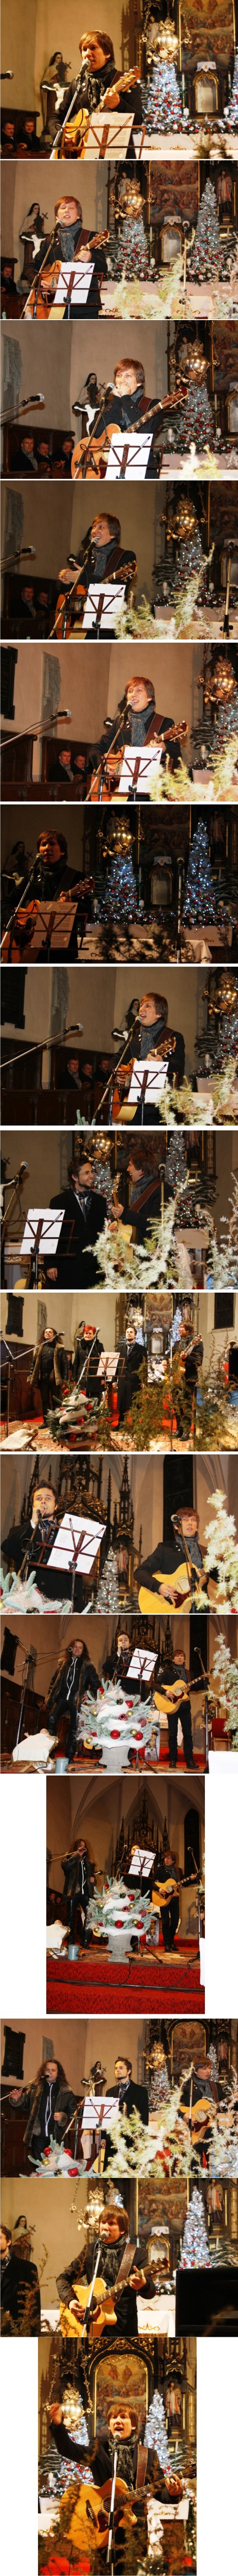 vianočný koncert